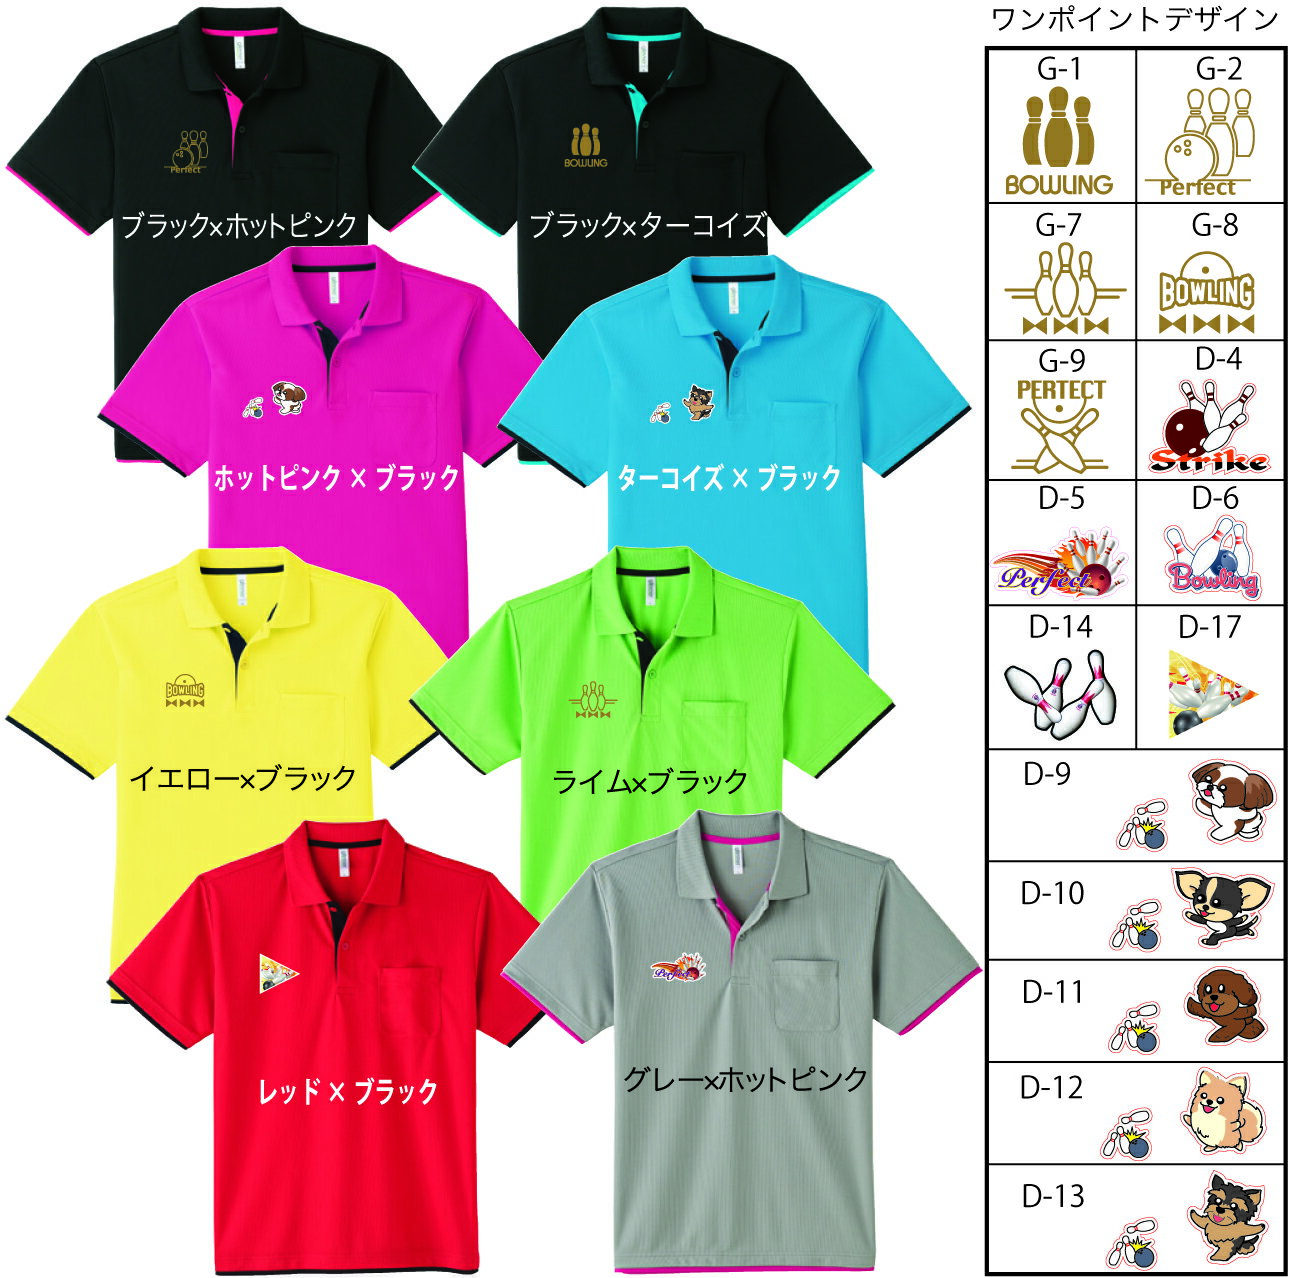 ボウリングレイヤードDryポロシャツ(ポリエステル100%)、339、送料無料、全10色-19デザイン、ボウリングウェア、ボウリングユニフォーム